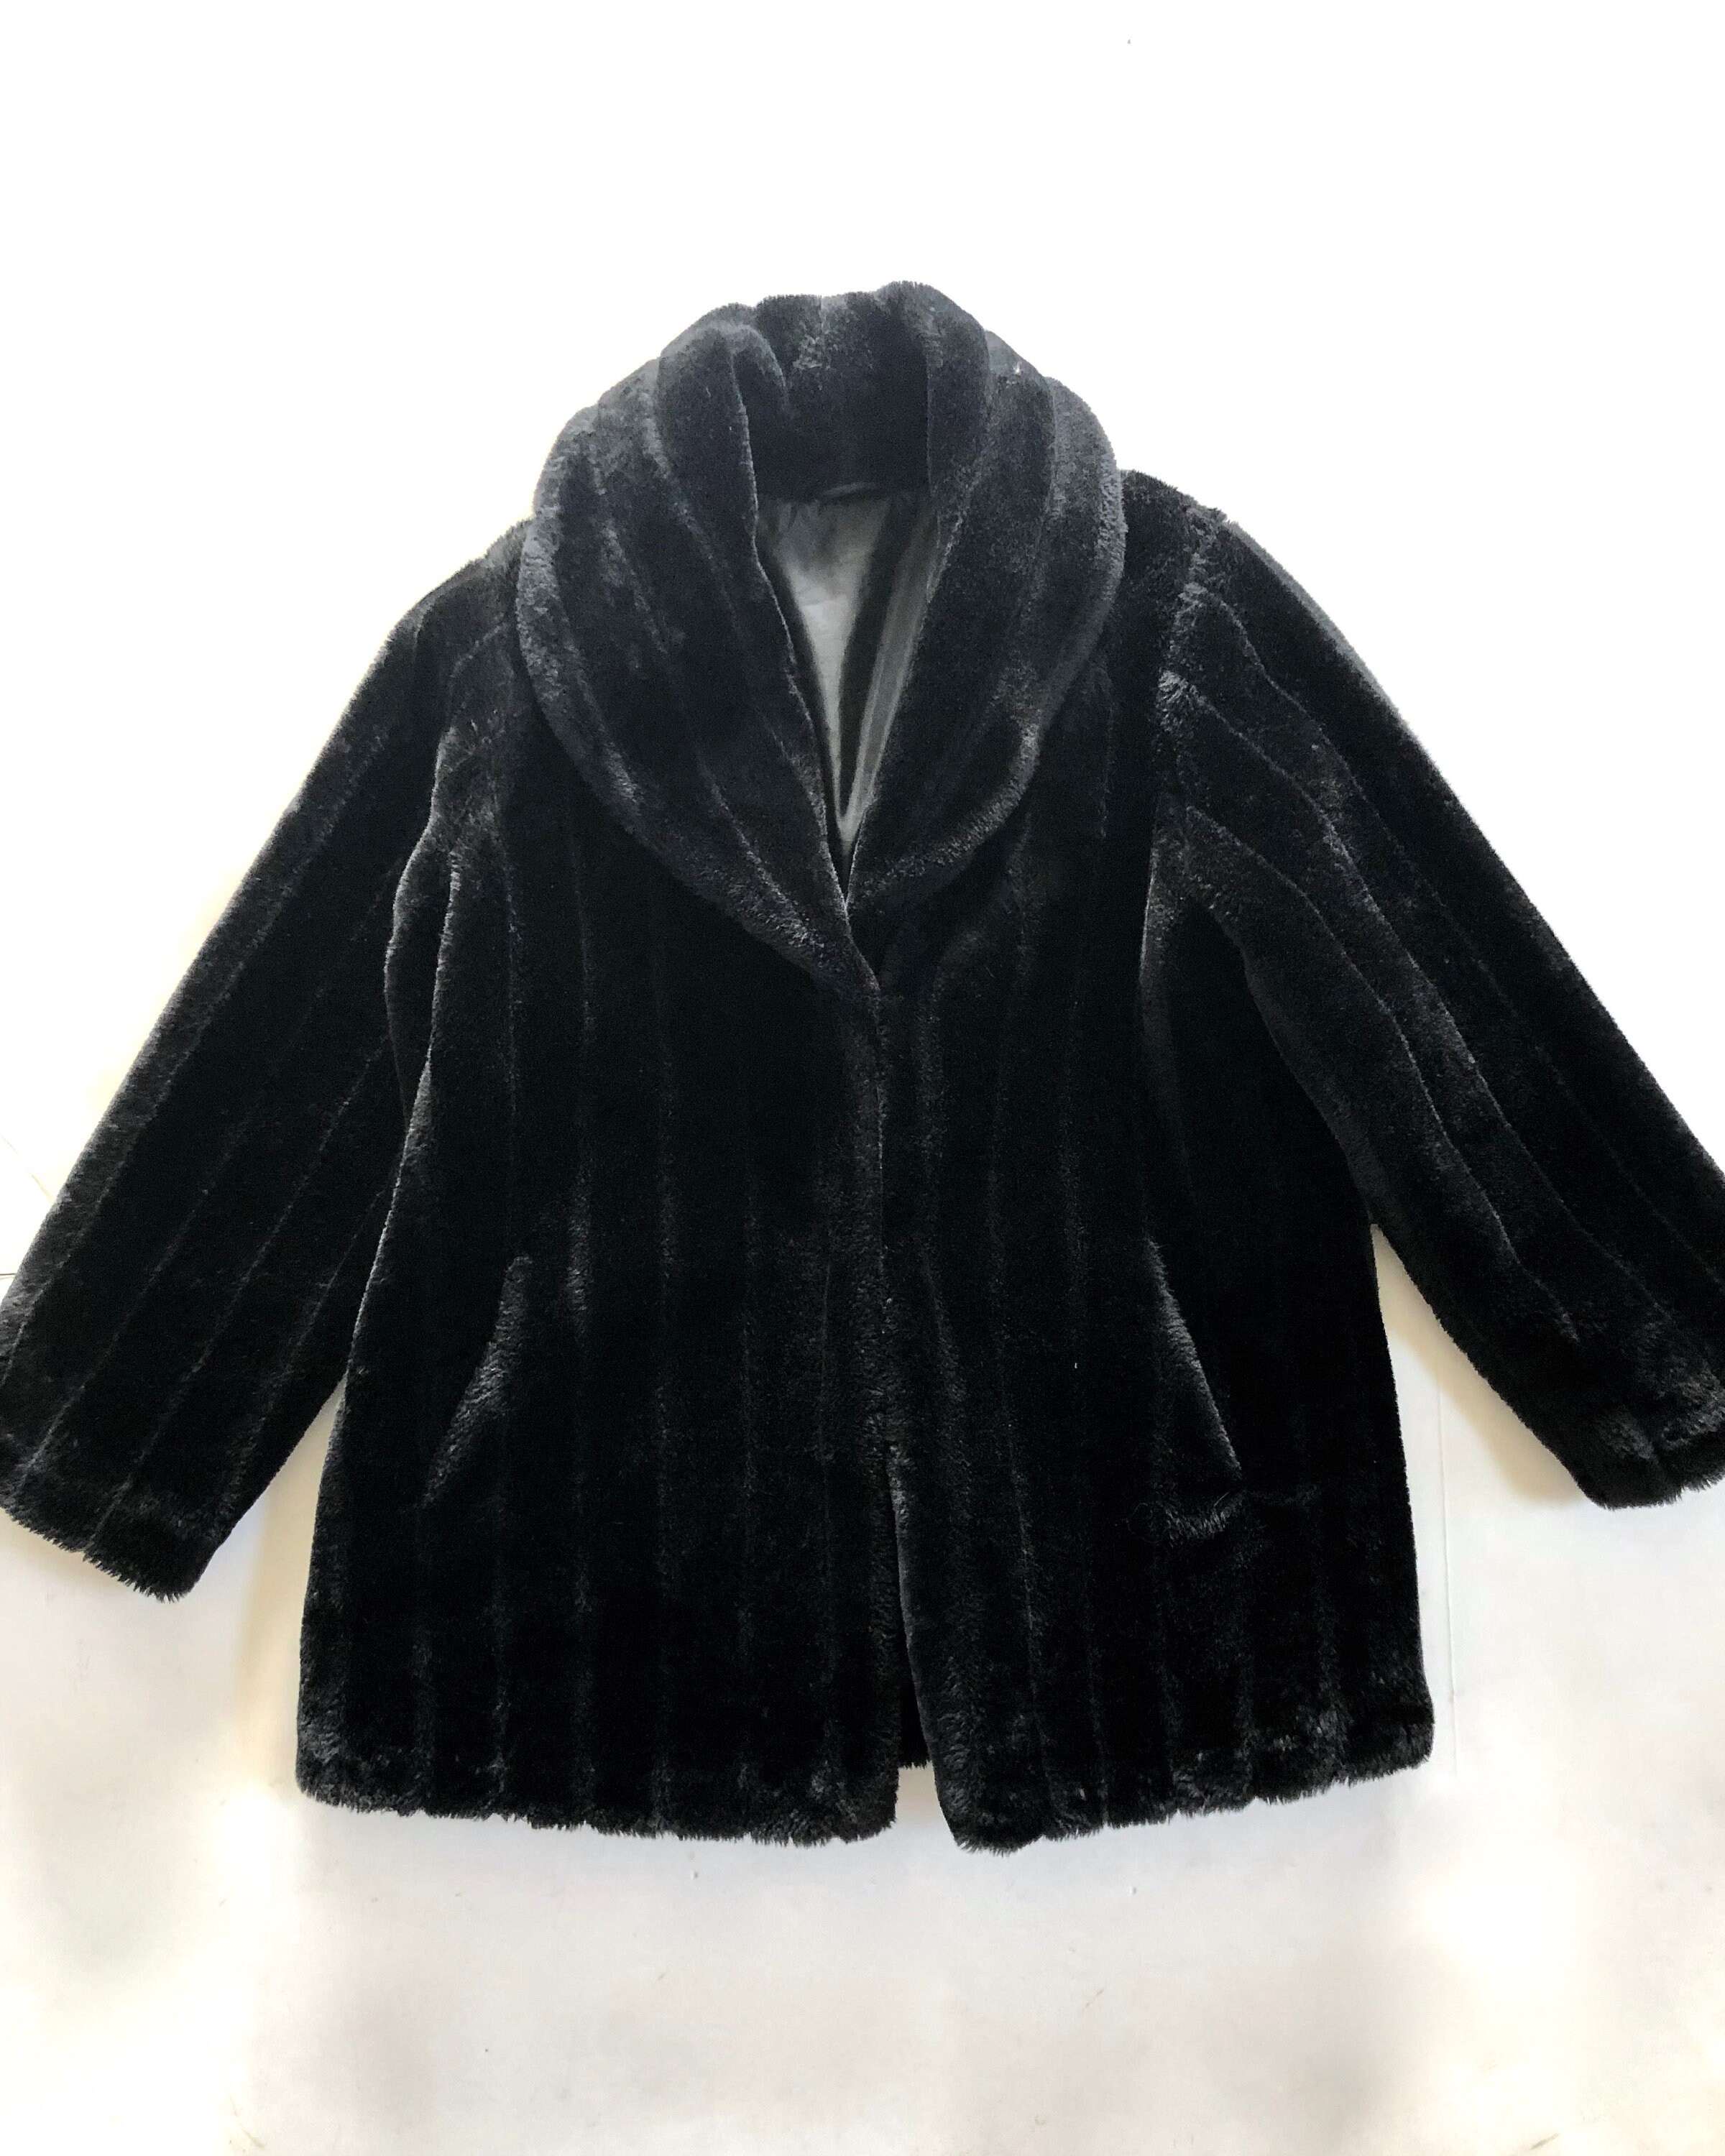 Vintage Coat Large Black Faux Fur Coat 80's 90's | Etsy